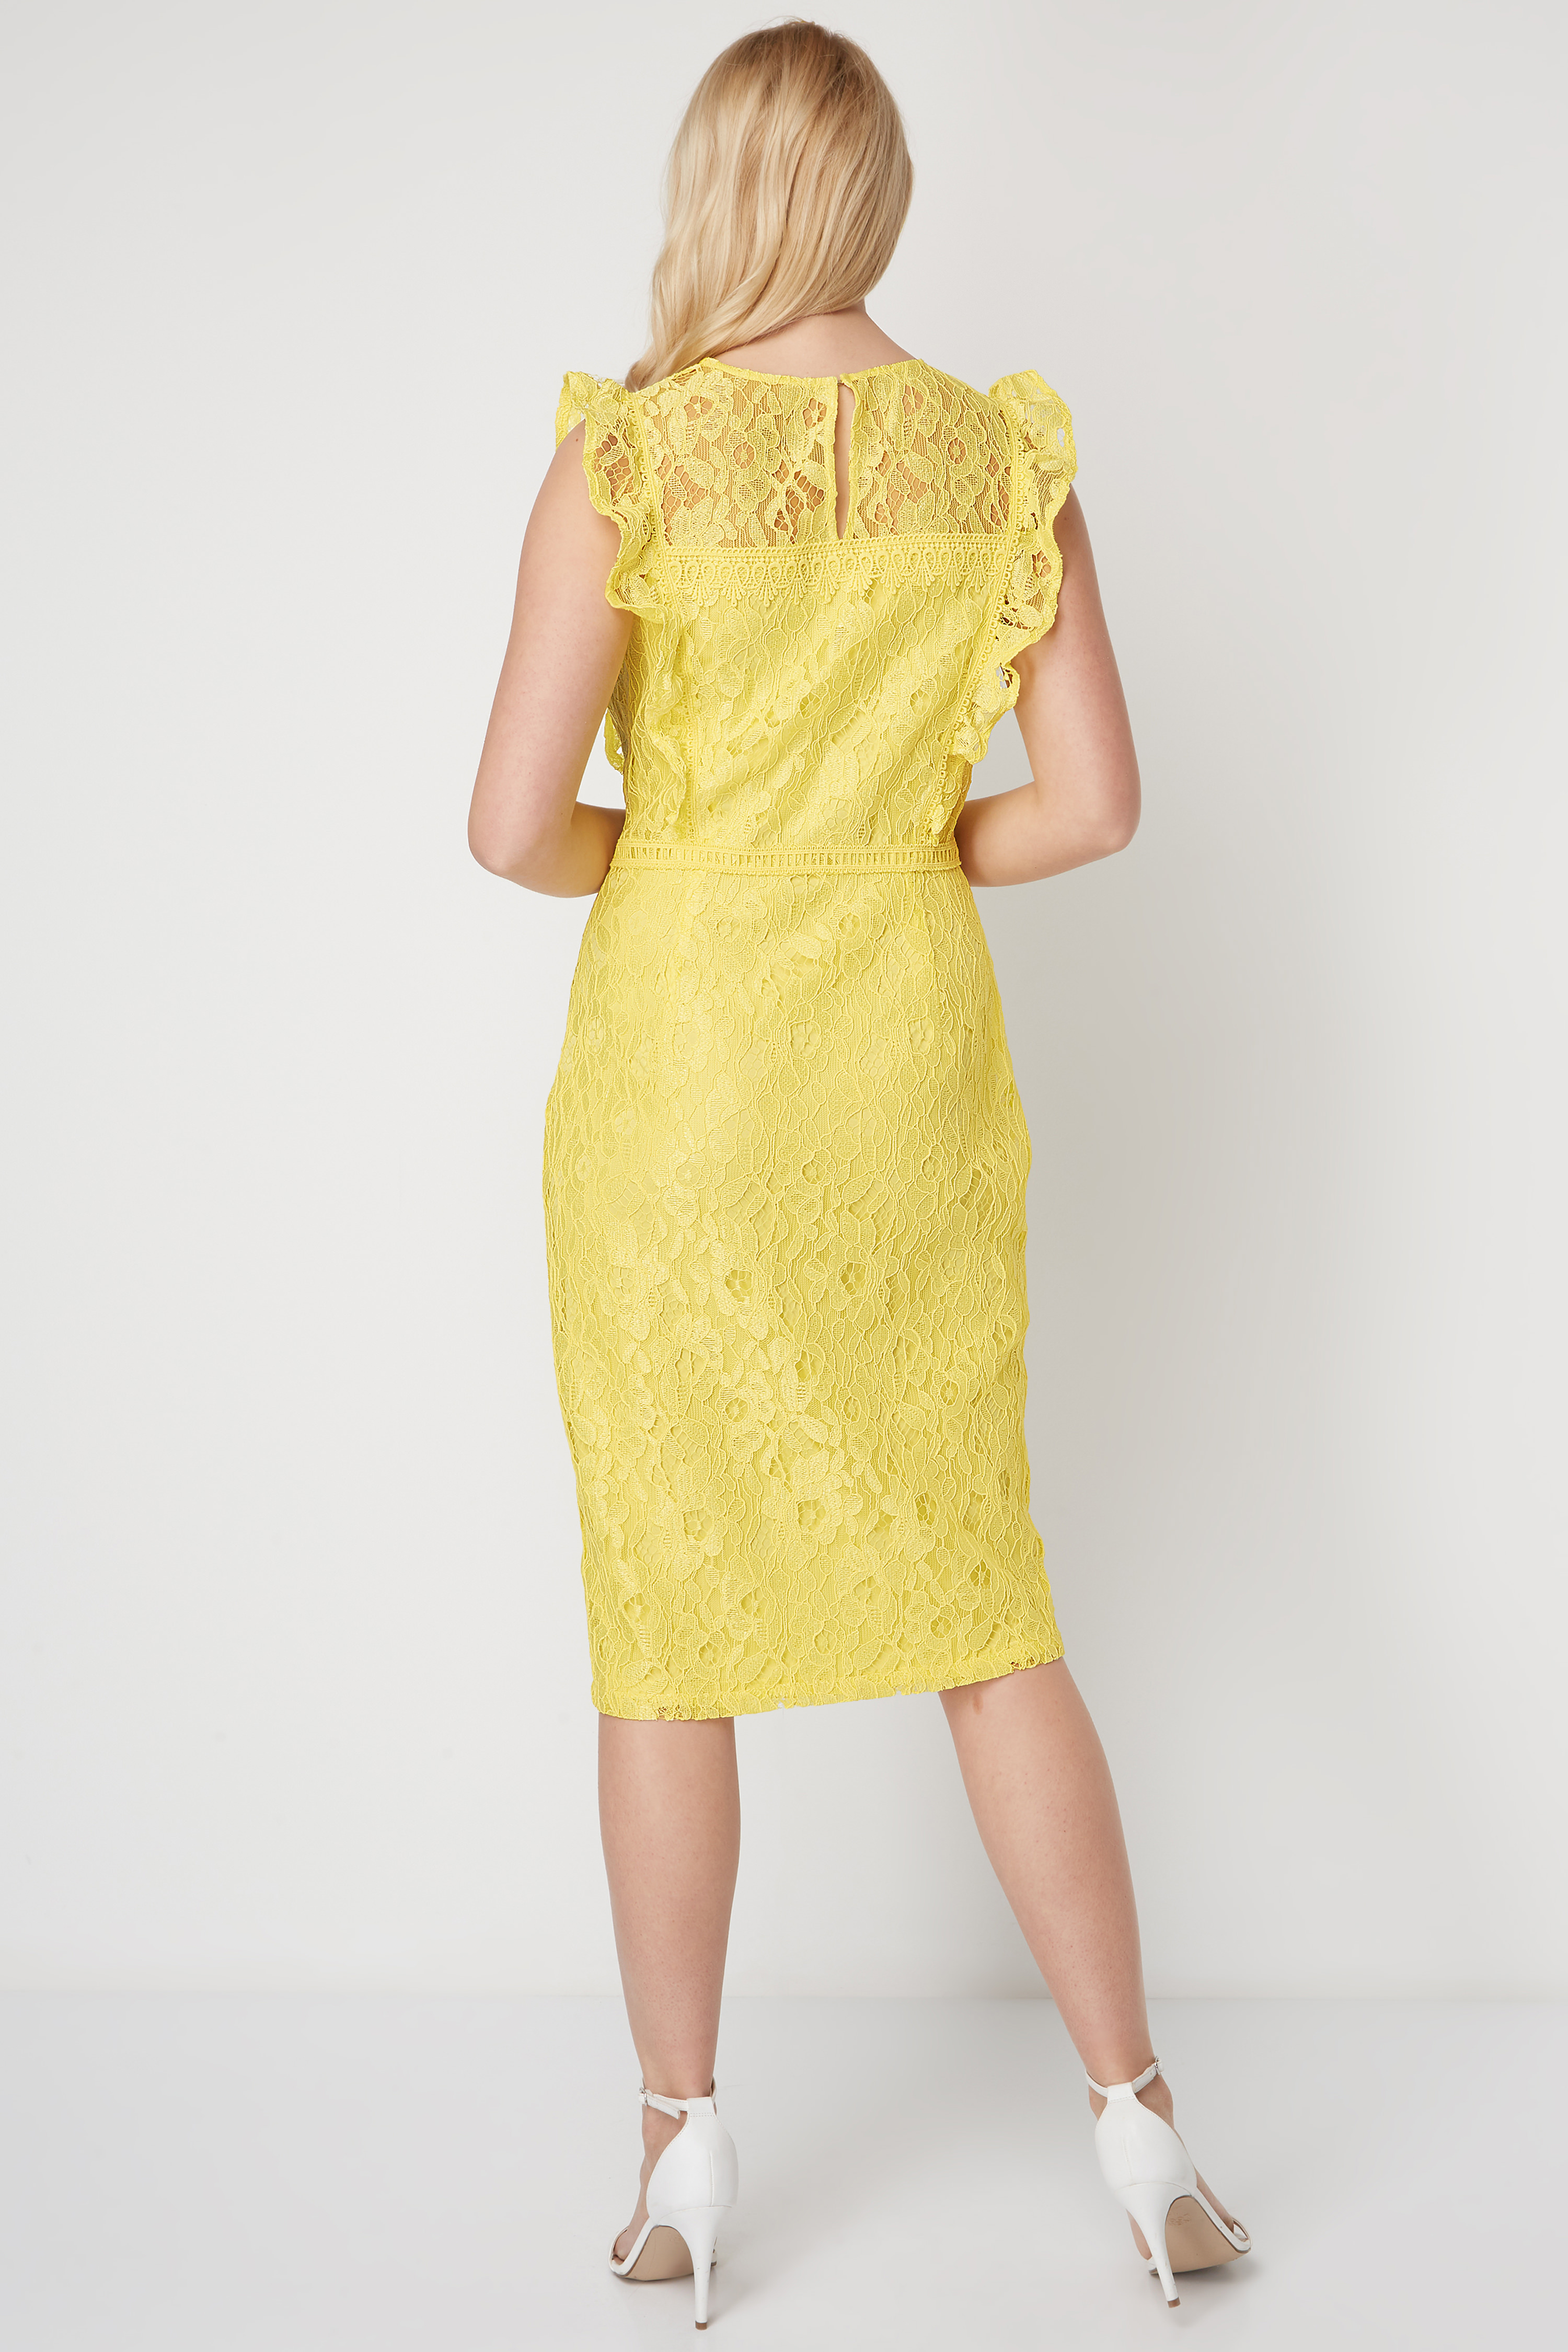 Yellow Lace Ruffle Dress, Image 2 of 5